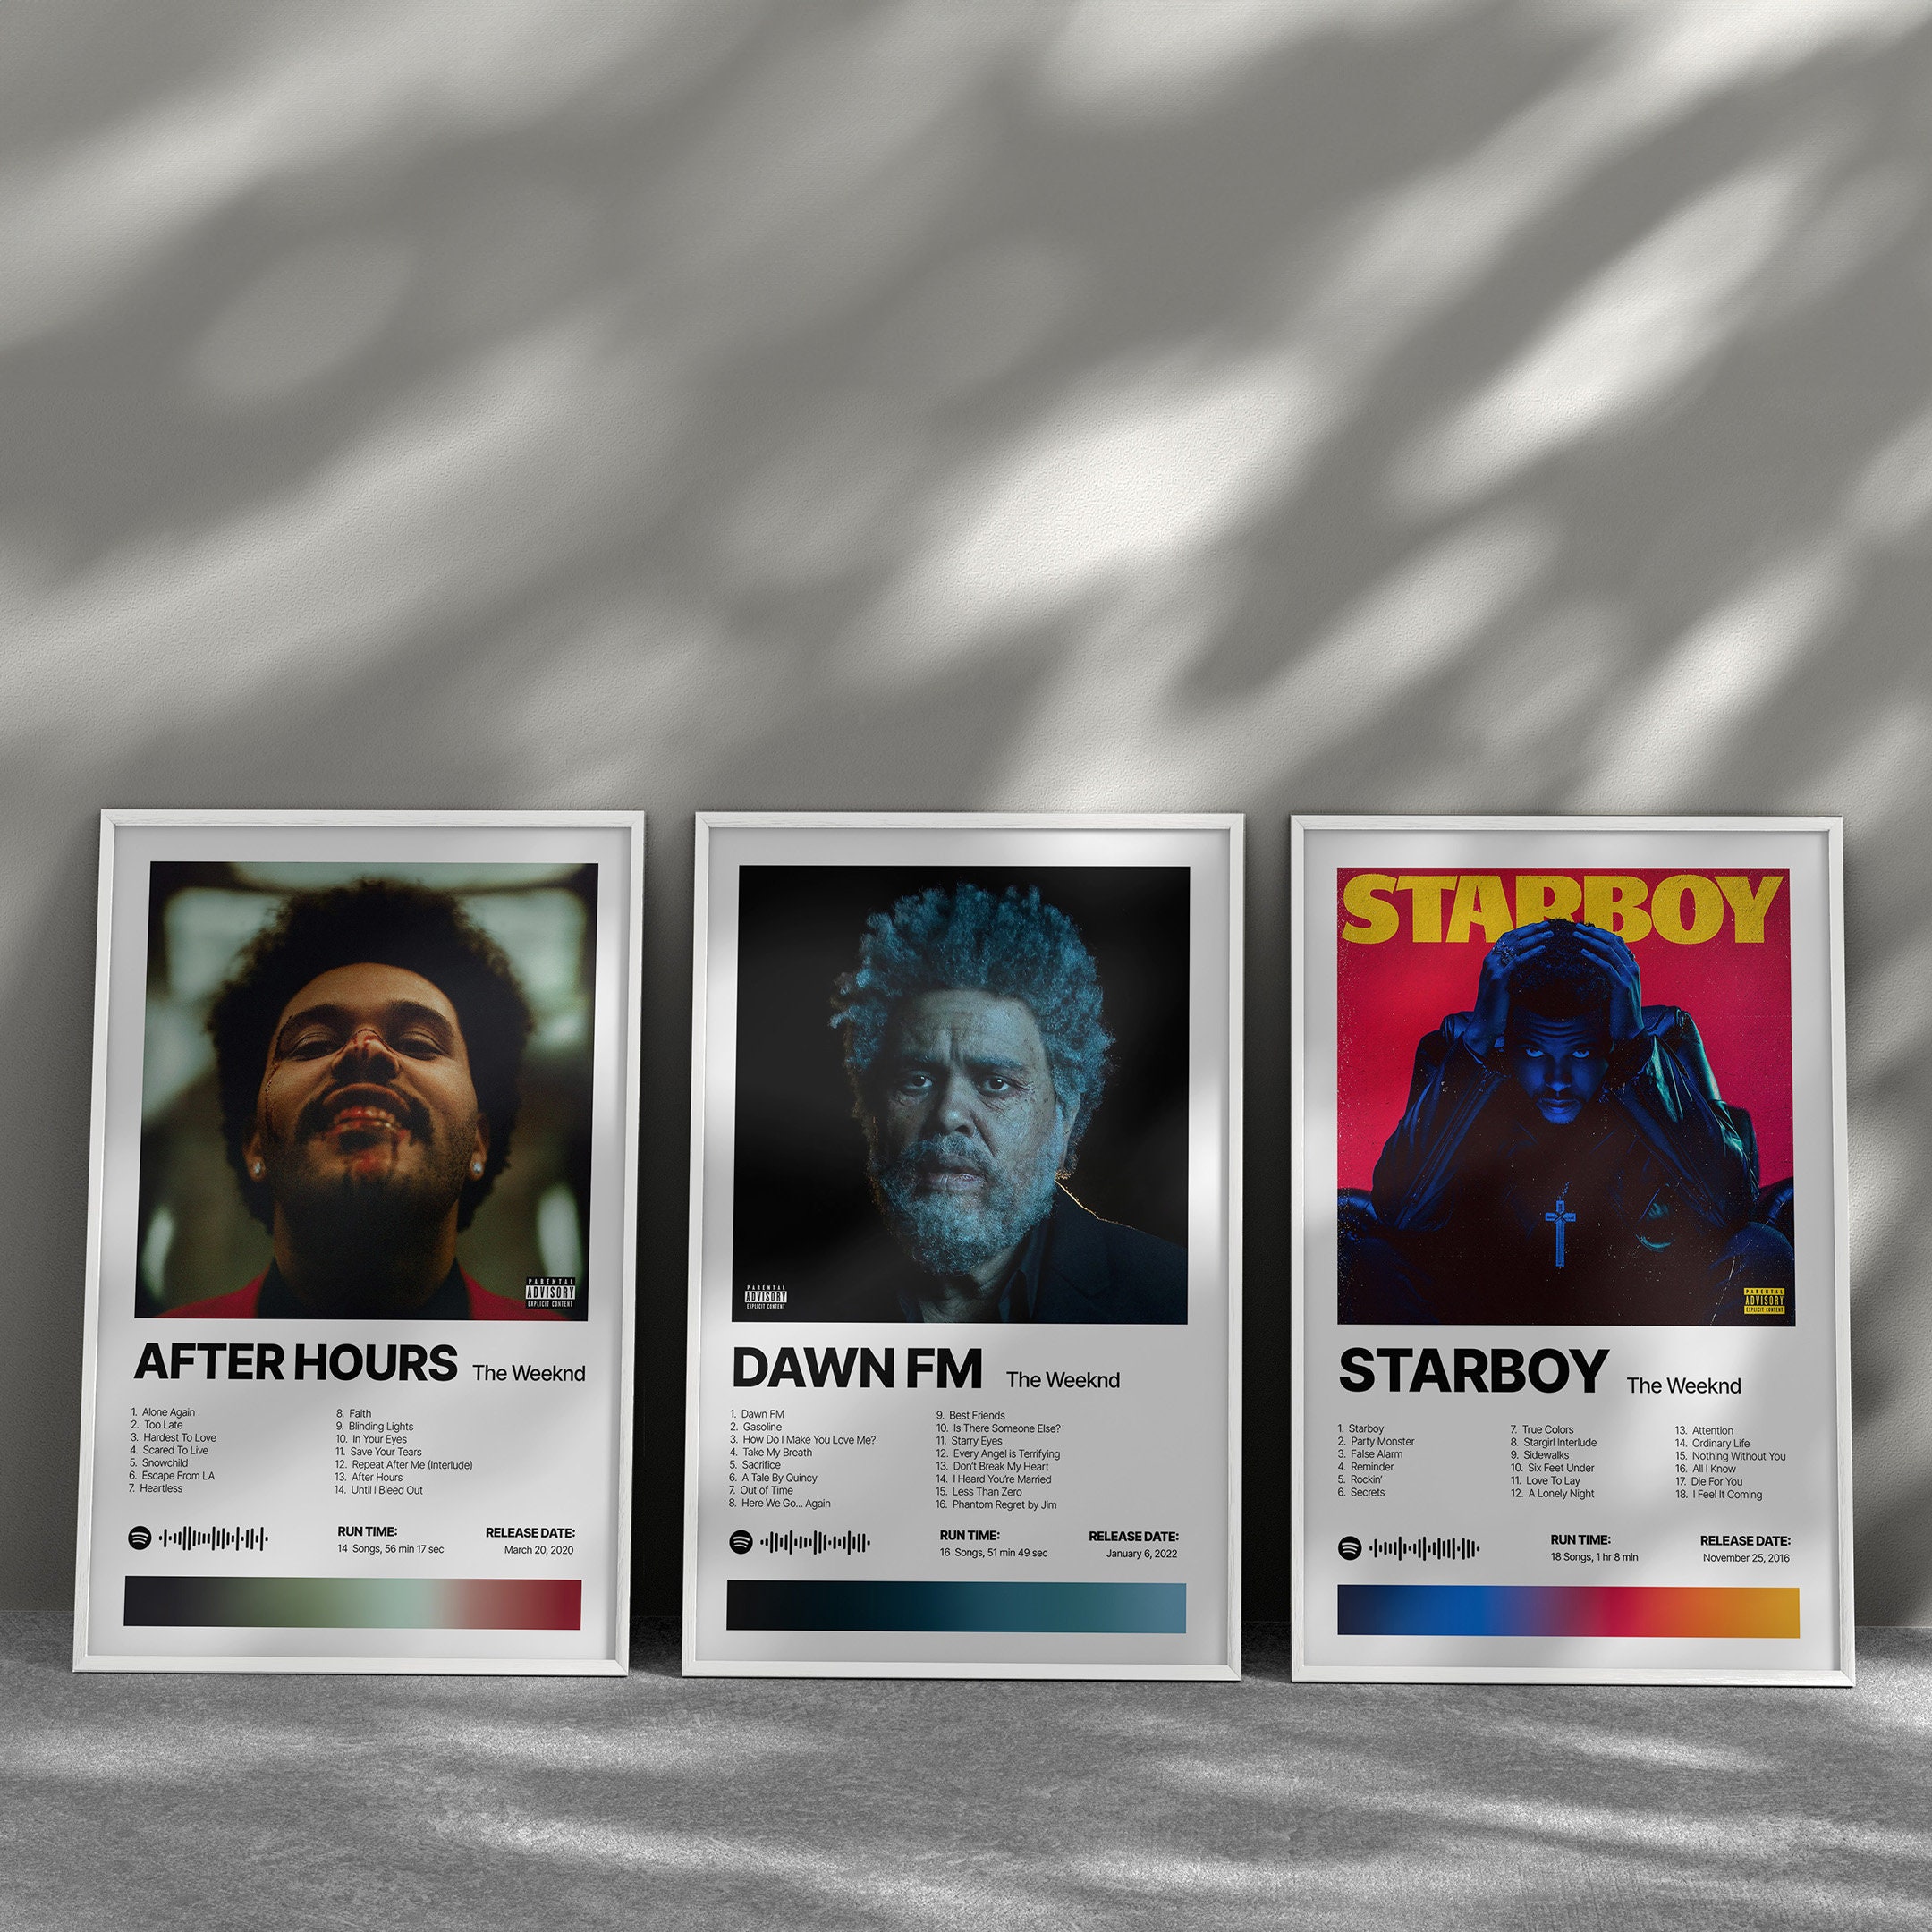 The Weeknd Sacrifice Dawn FM Wallpaper  The weeknd, The weeknd wallpaper  iphone, The weeknd poster